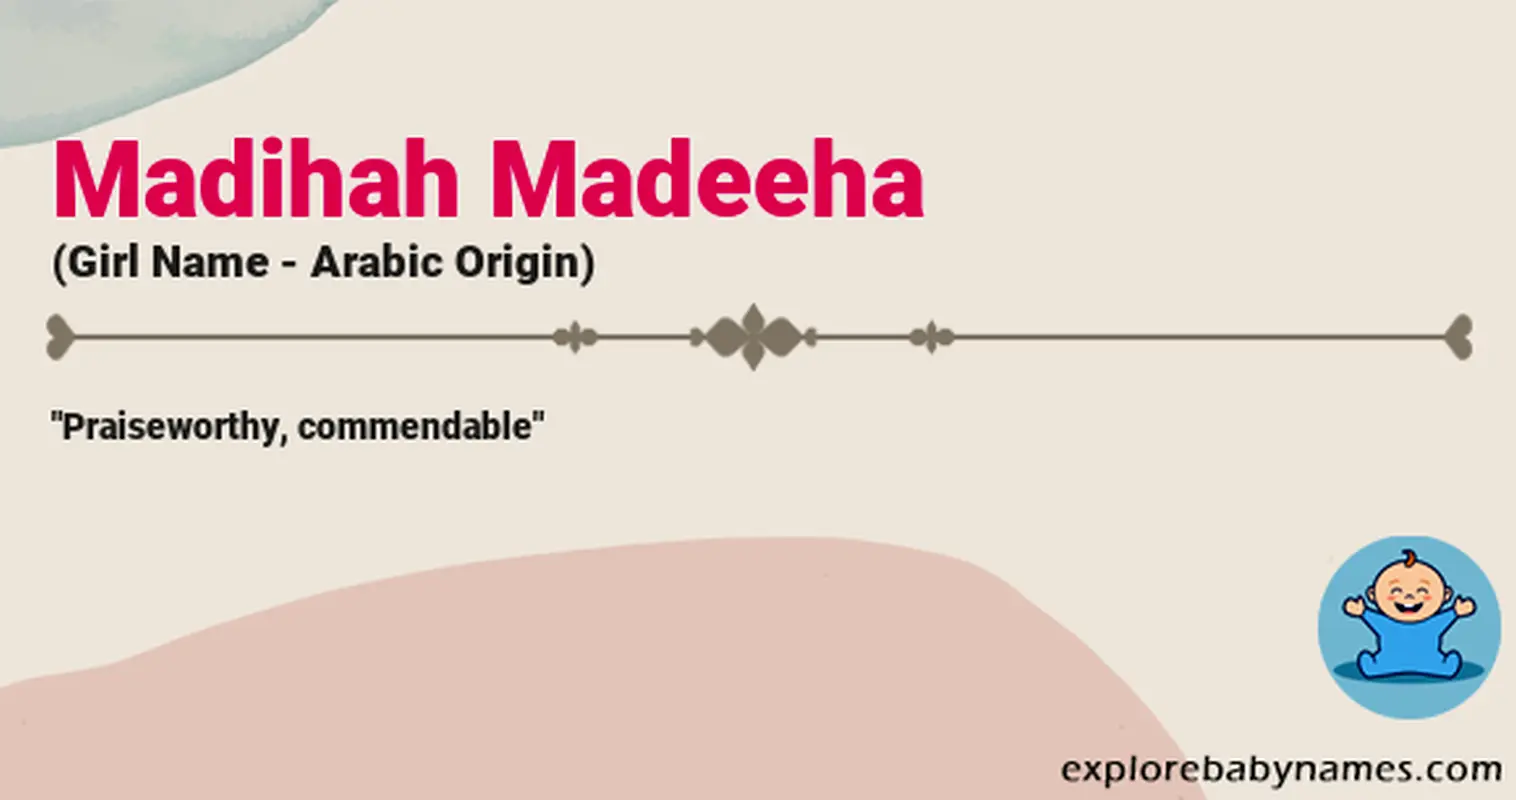 Meaning of Madihah Madeeha